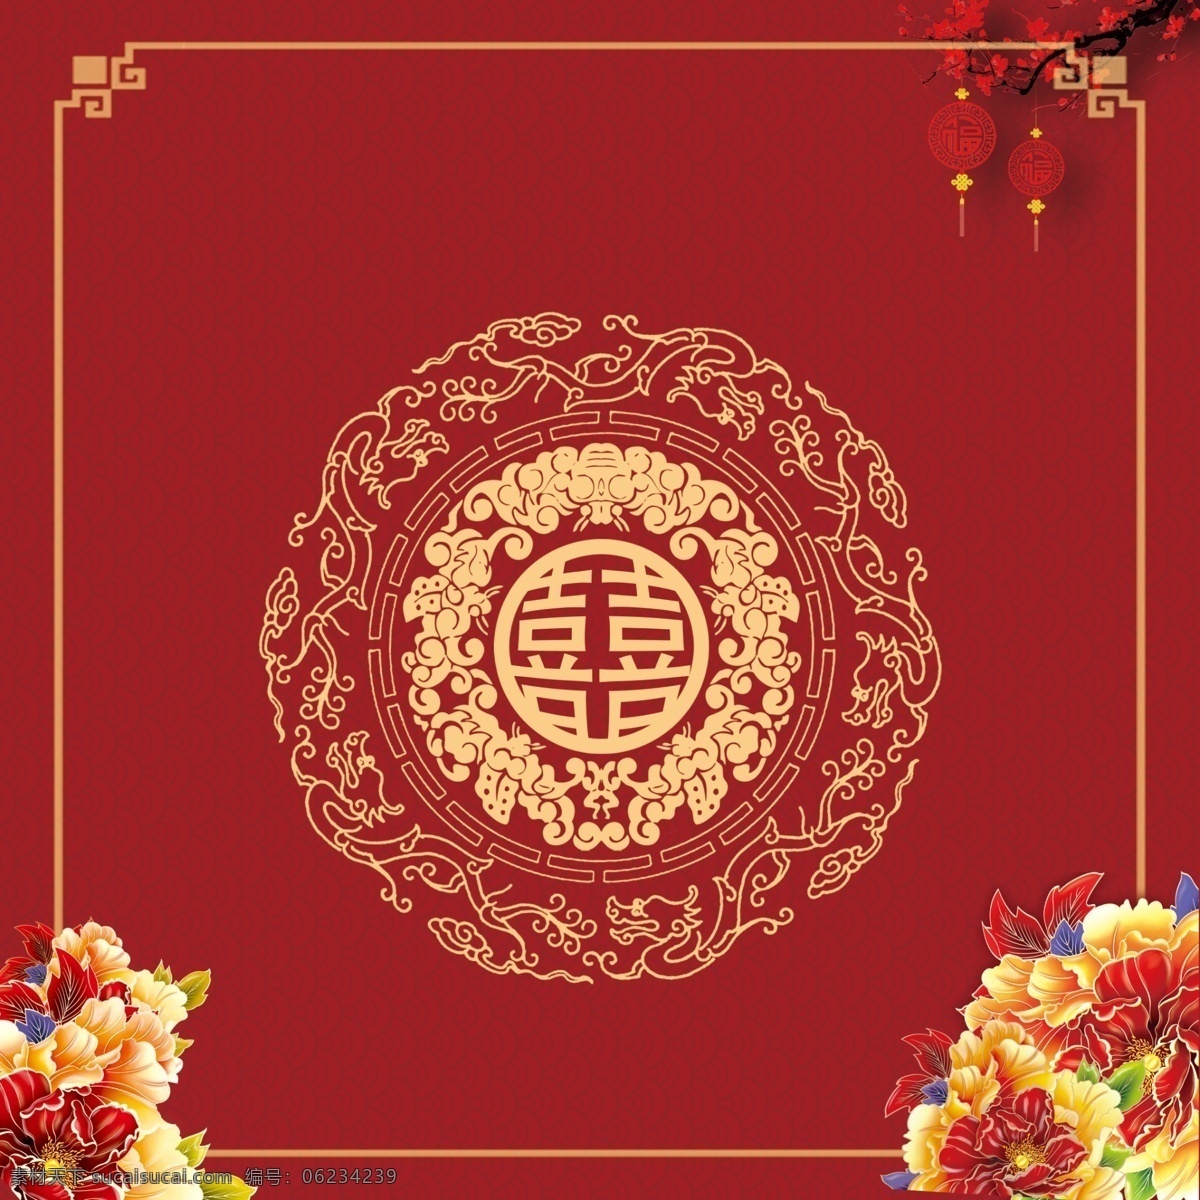 中式 婚礼 背景图片 背景 中式婚礼背景 红色婚礼